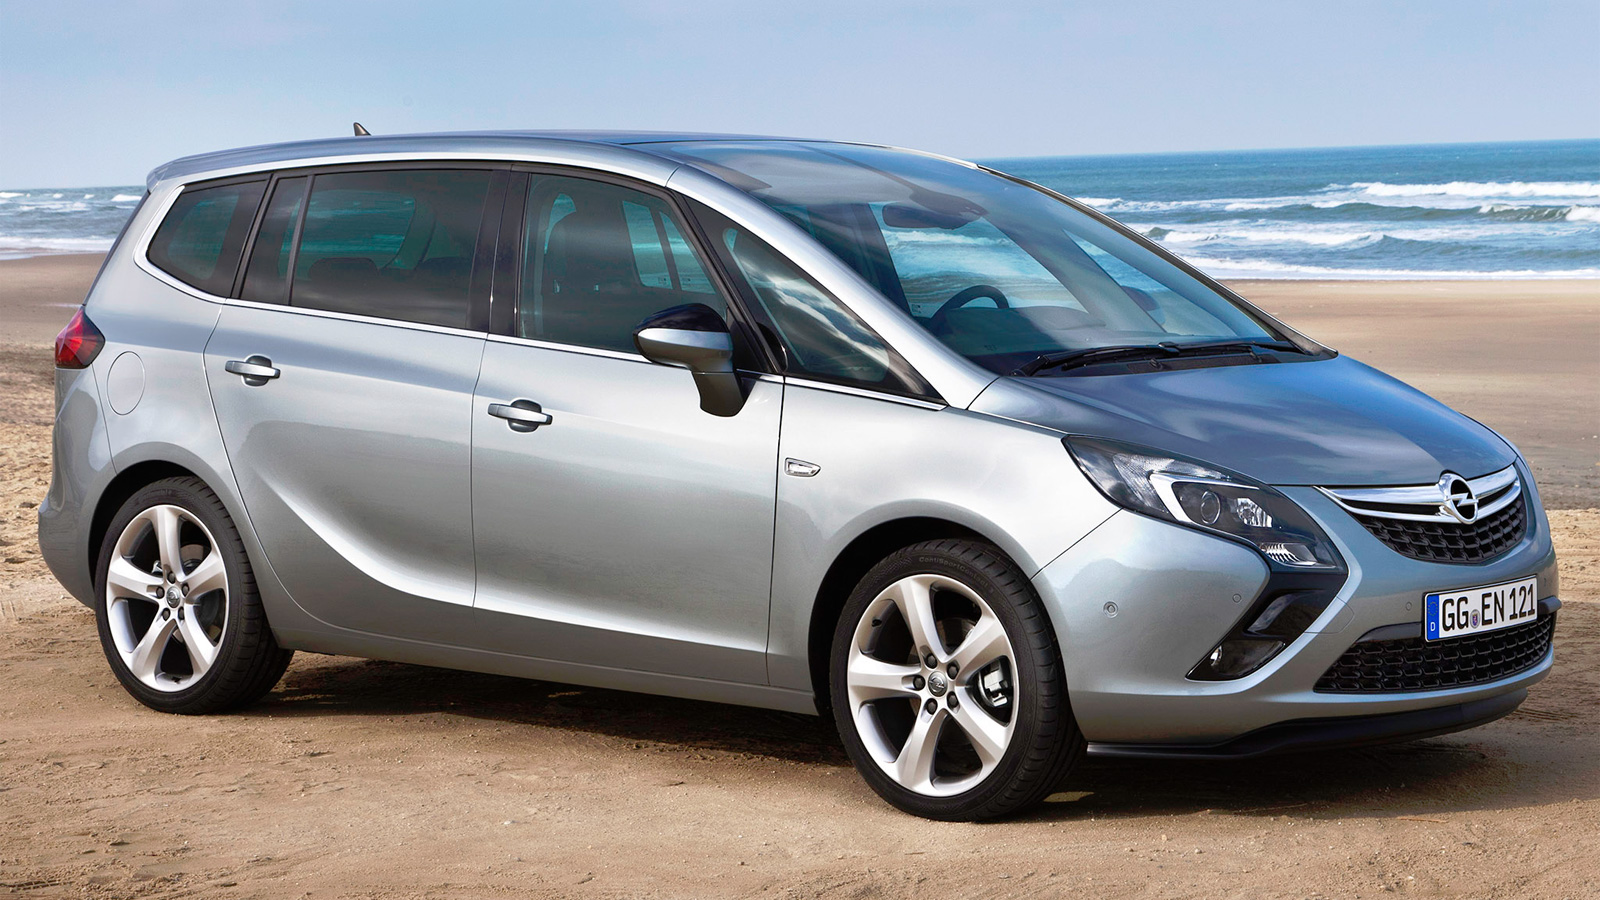 Цены и характеристики Opel Zafira фотографии и обзор